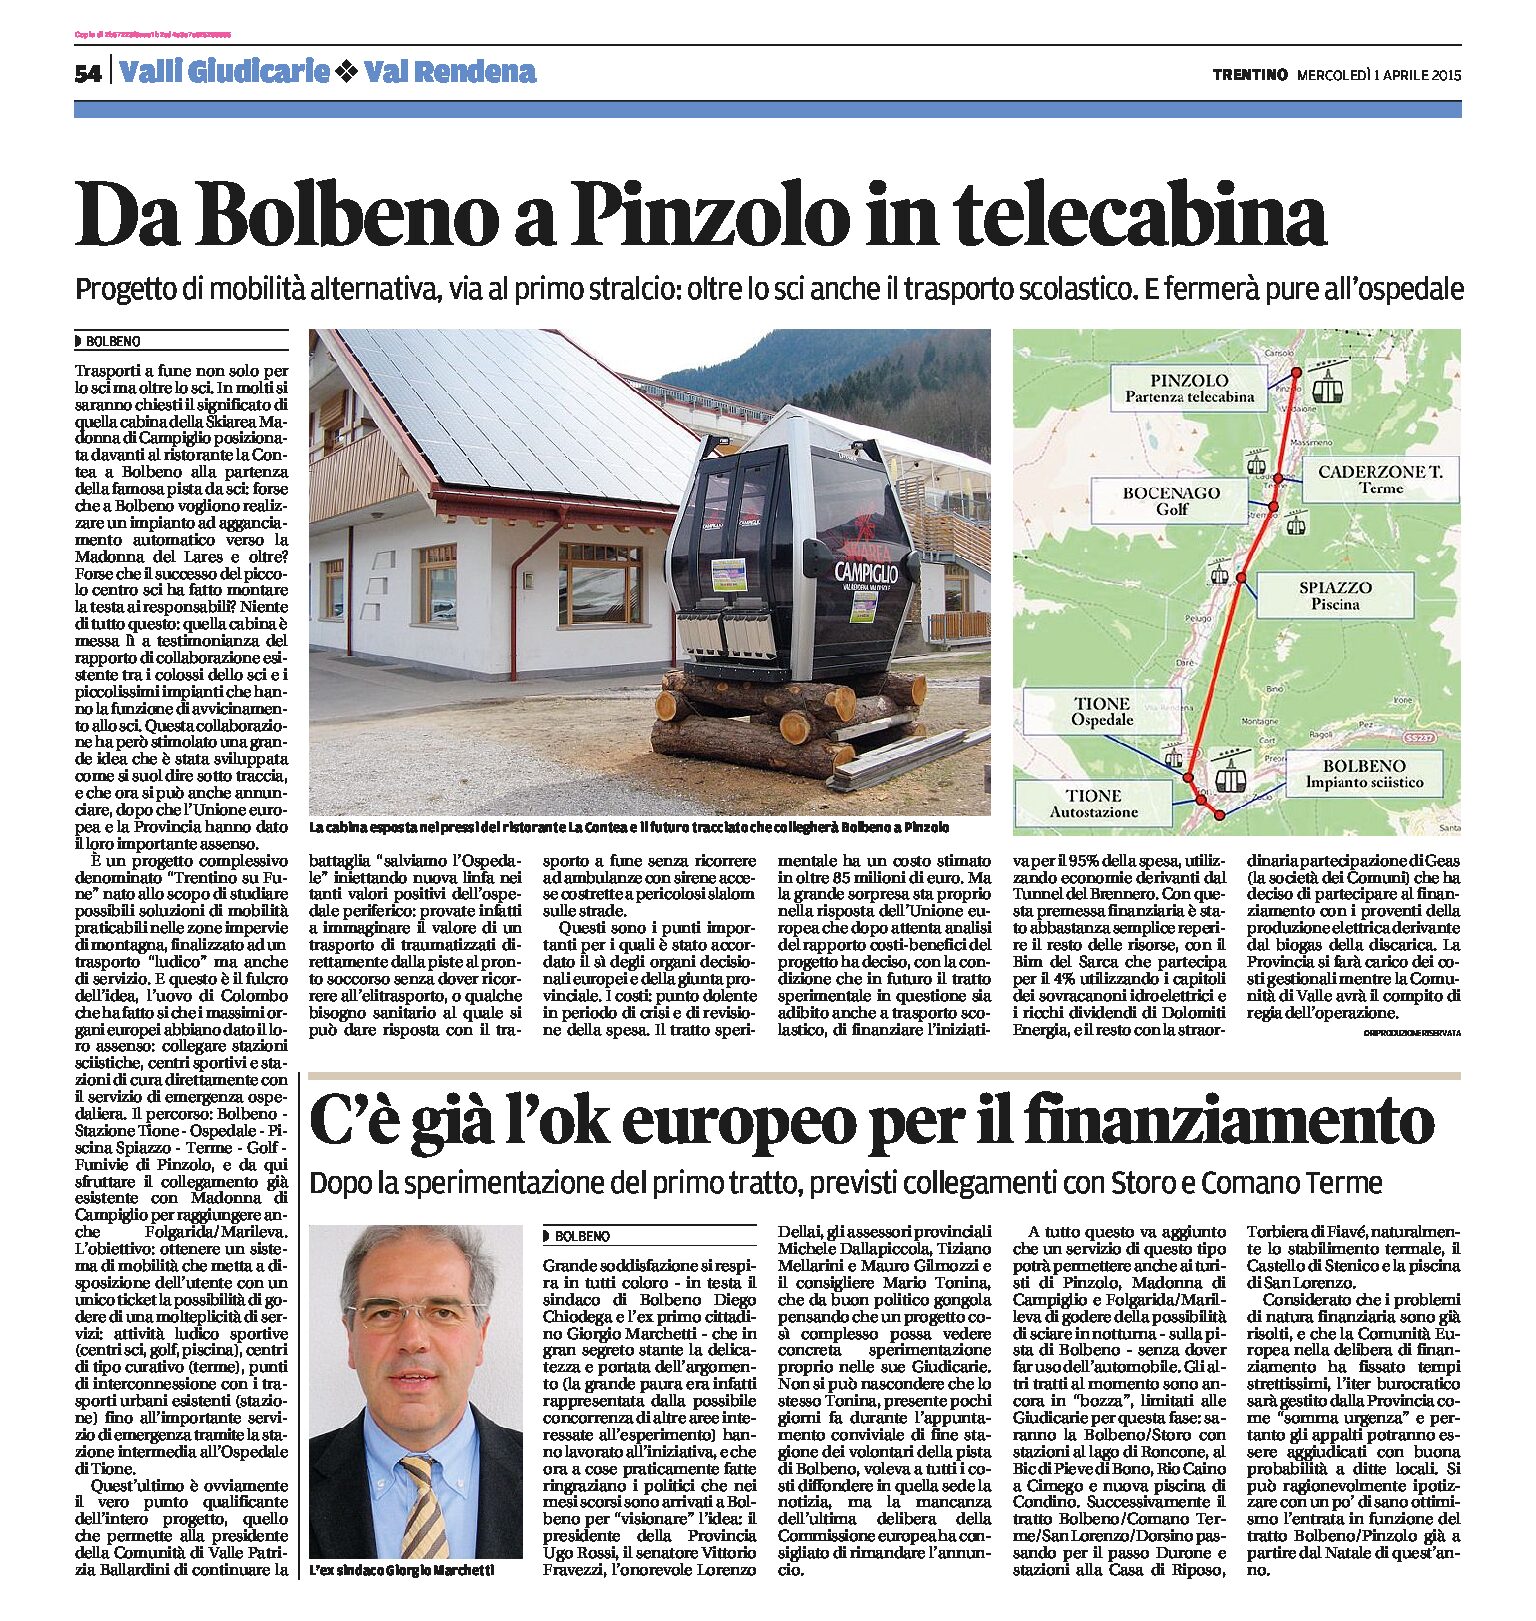 Mobilità alternativa: da Bolbeno a Pinzolo in telecabina. Già l’ok dell’Unione europea al progetto “Trentino su Fune”